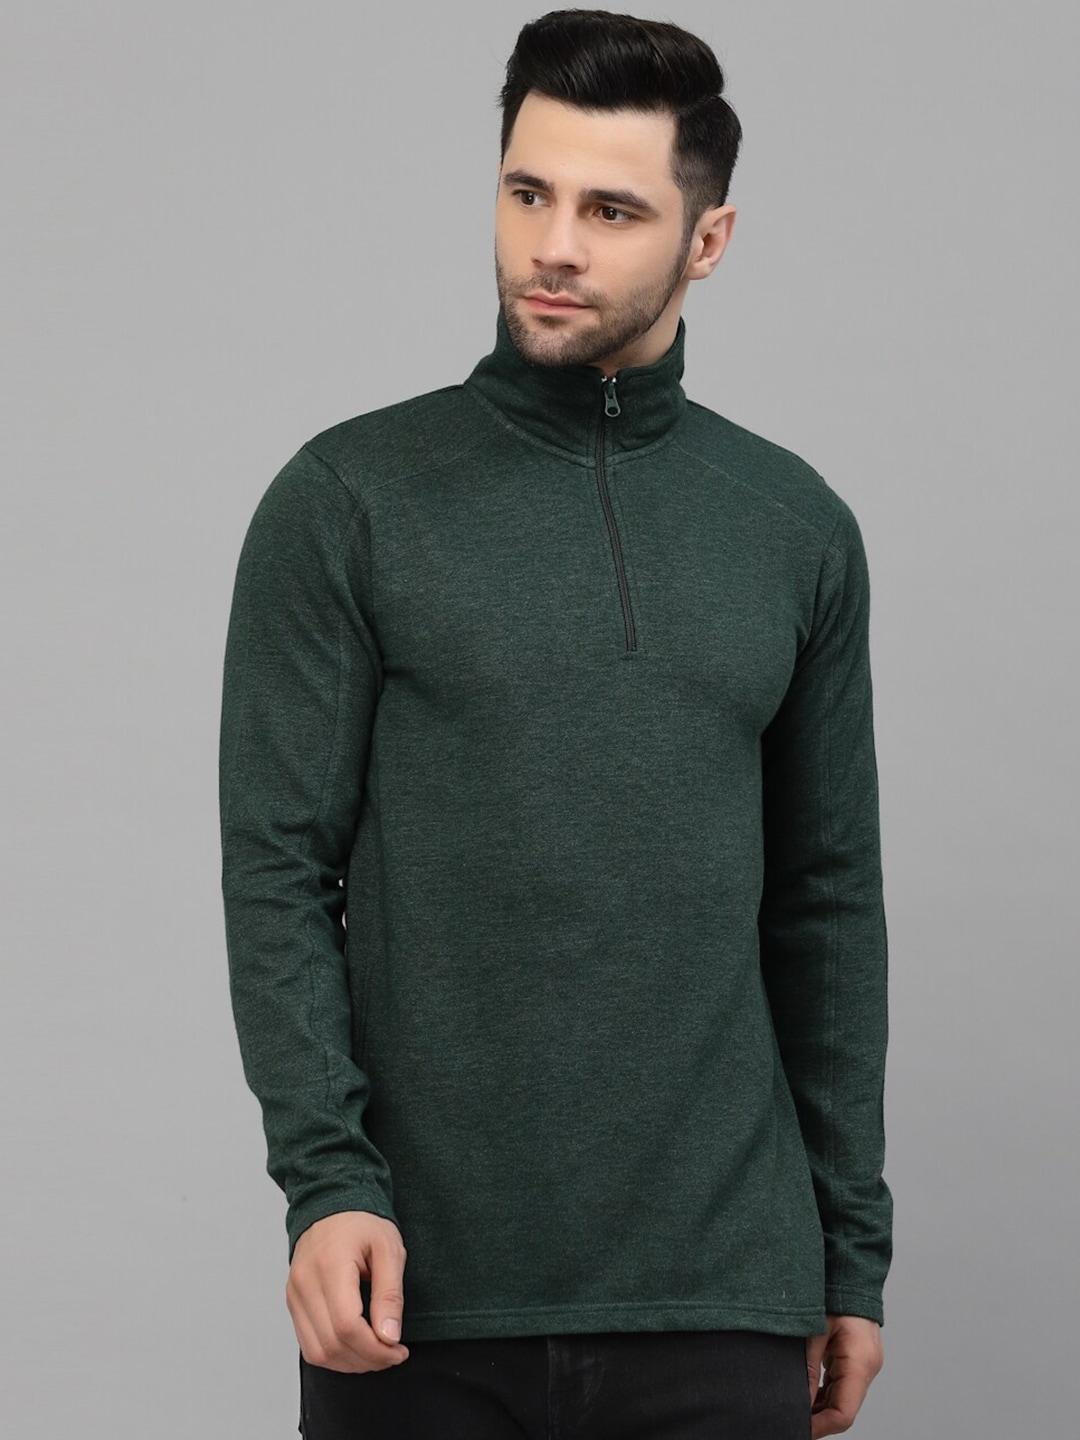 style-quotient-men-green-cotton-sweatshirt